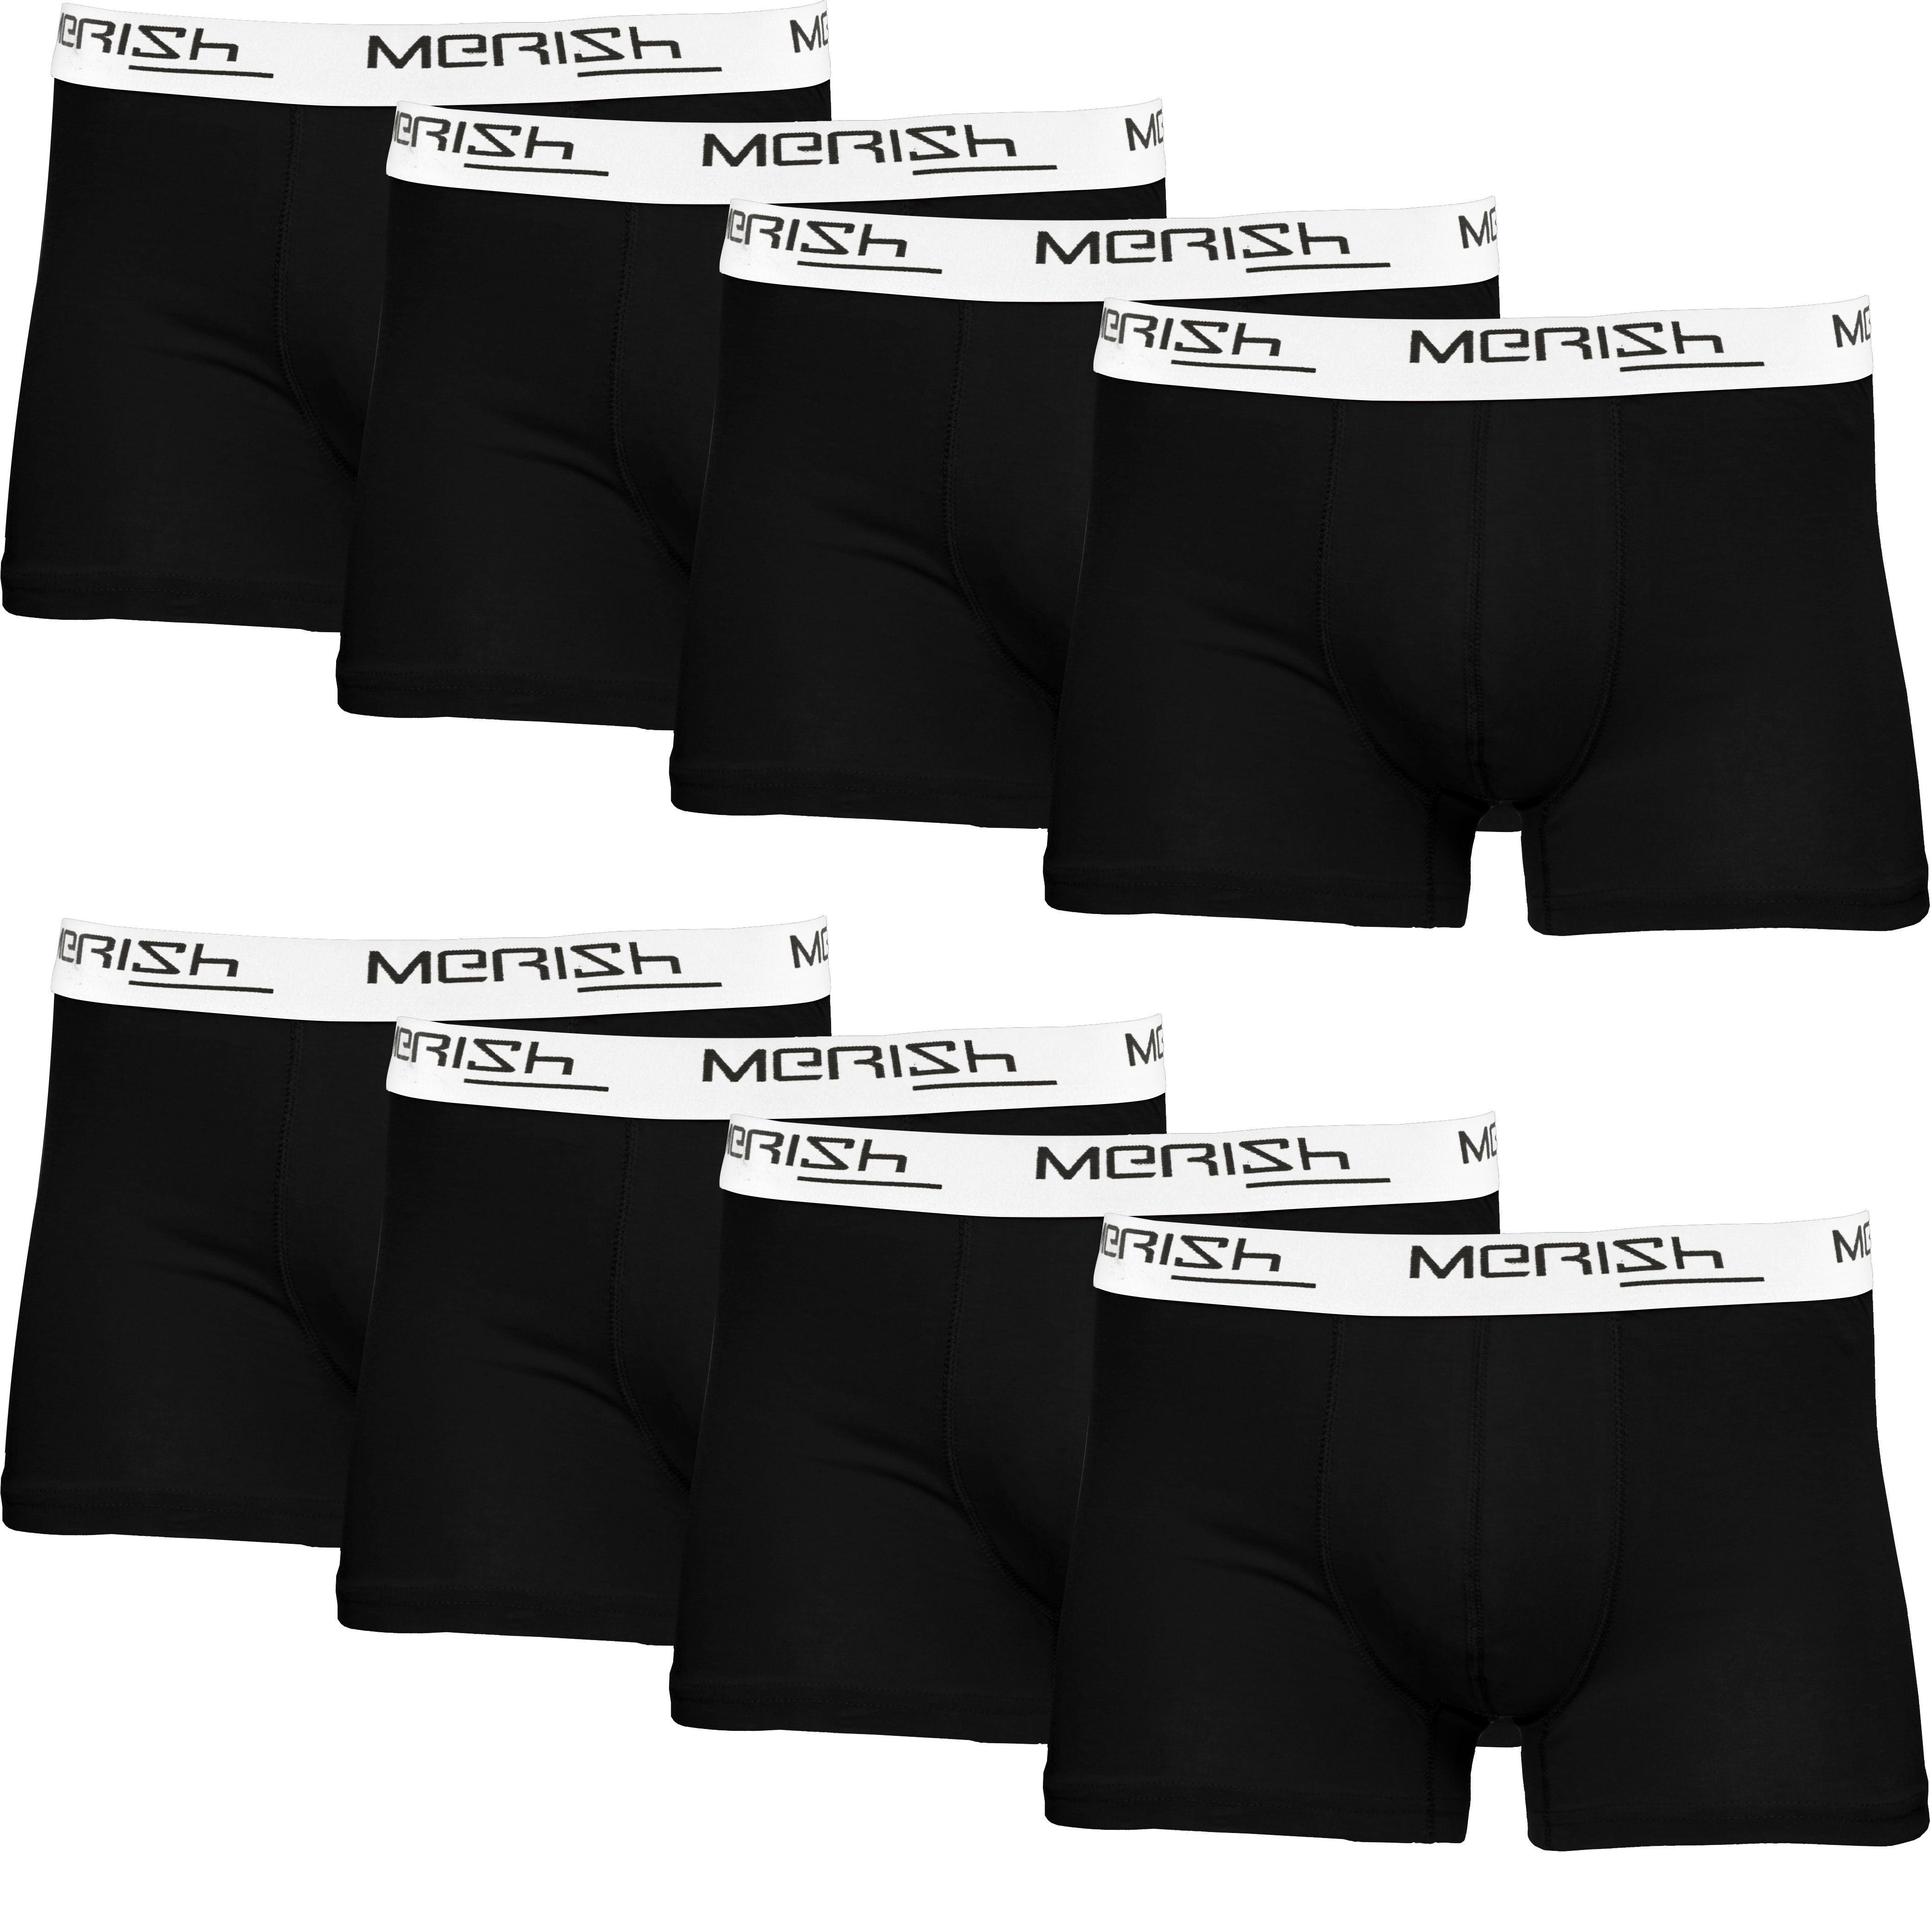 MERISH Boxershorts Herren Männer Unterhosen Baumwolle Premium Qualität perfekte Passform (Vorteilspack, 8er-Pack) S - 7XL 215b-schwarz